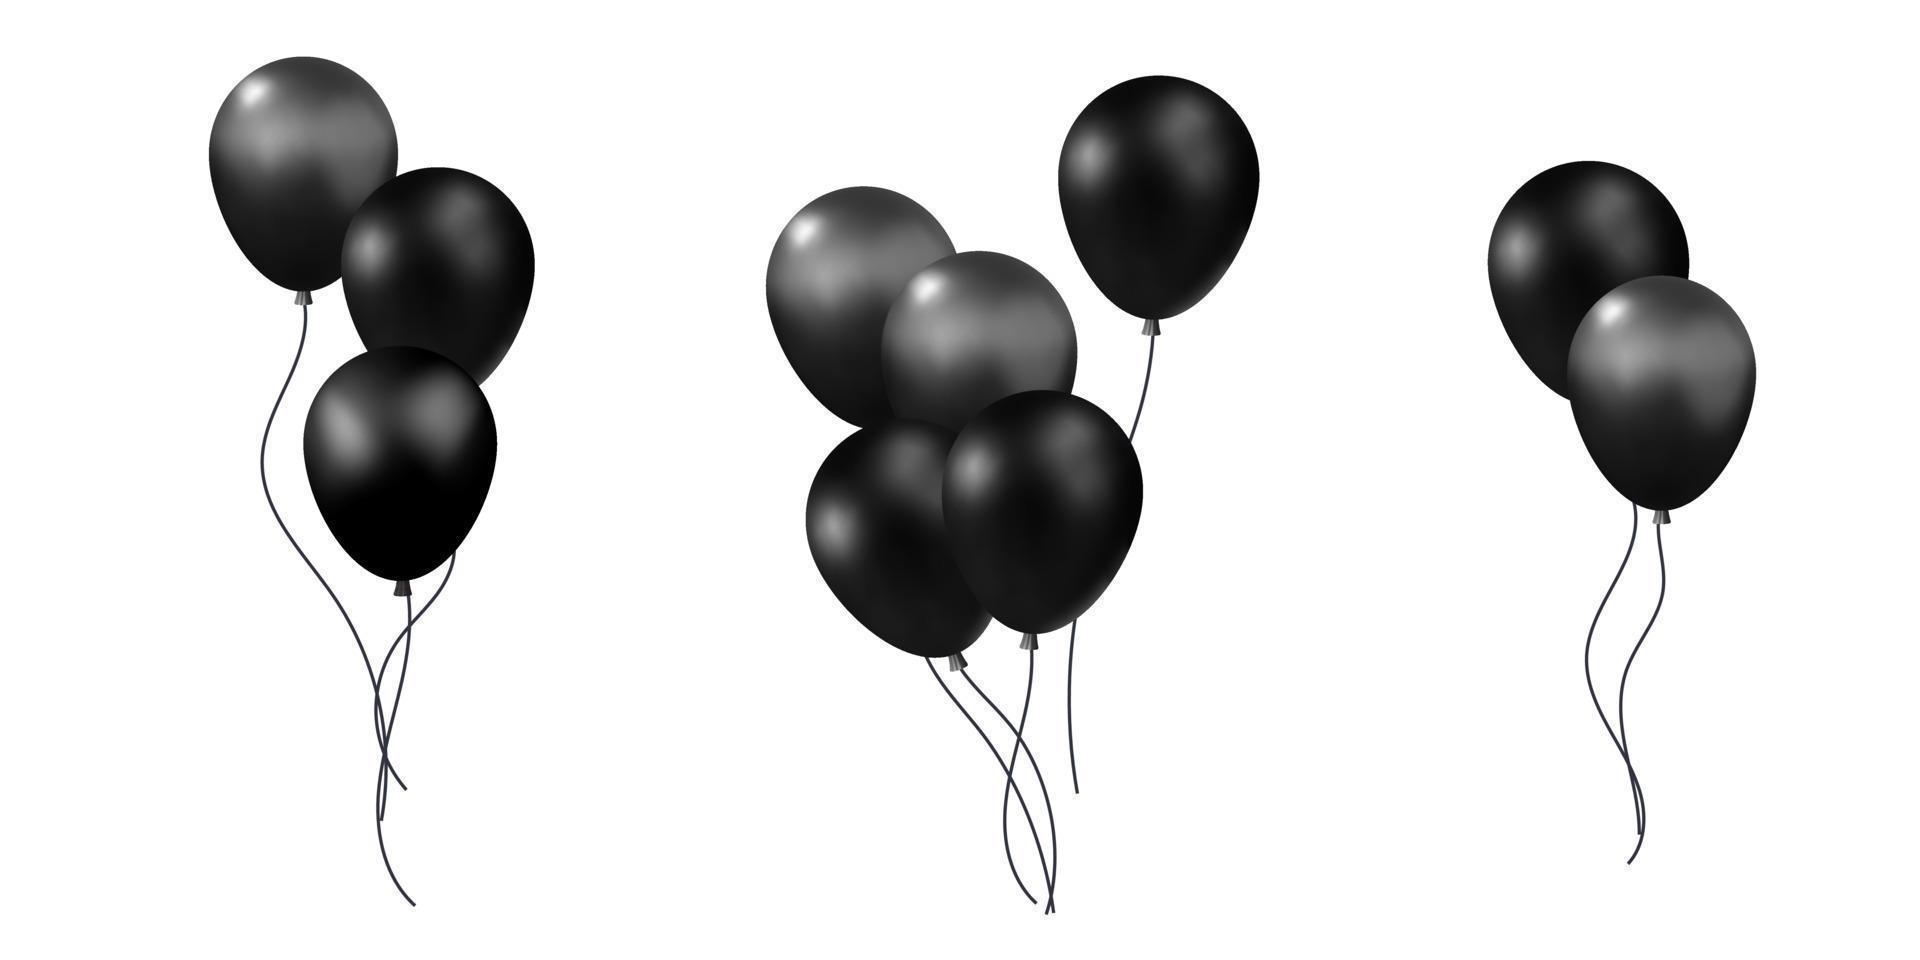 reeks van verschillend 3d vector bundel zwart realistisch geven lucht ballonnen voor verjaardag, feestelijk, vakantie evenement met confetti, sterren decoratie element ontwerp